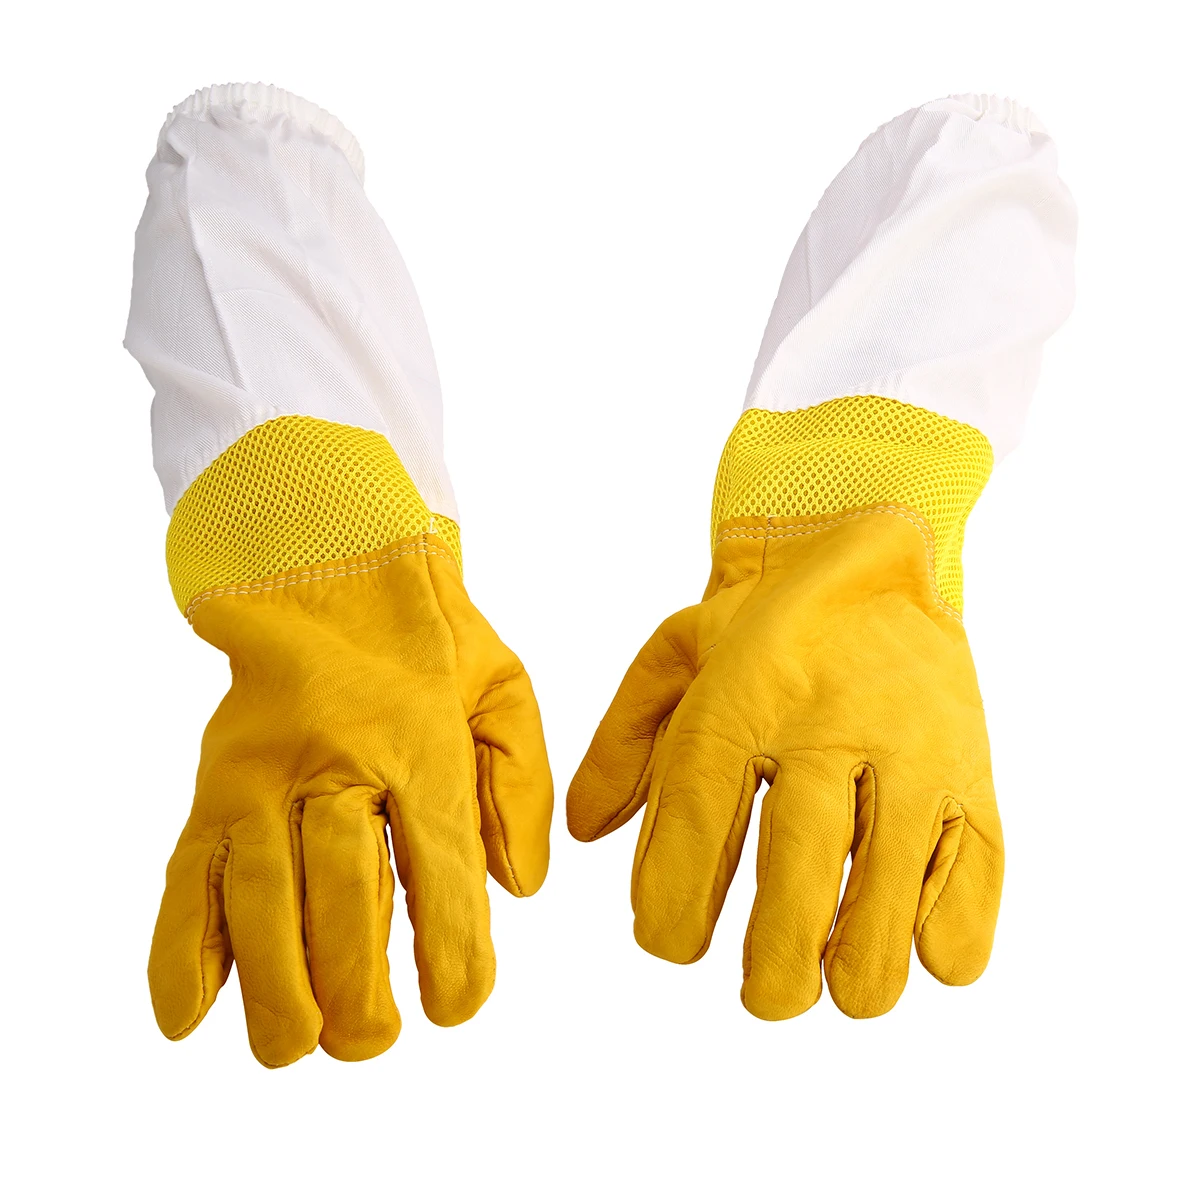 1 пара желтая защита от пчел перчатки XL пчеловод Анти-пчела перчатки козья кожа пчеловодческий с вентилируемым длинным рукавом